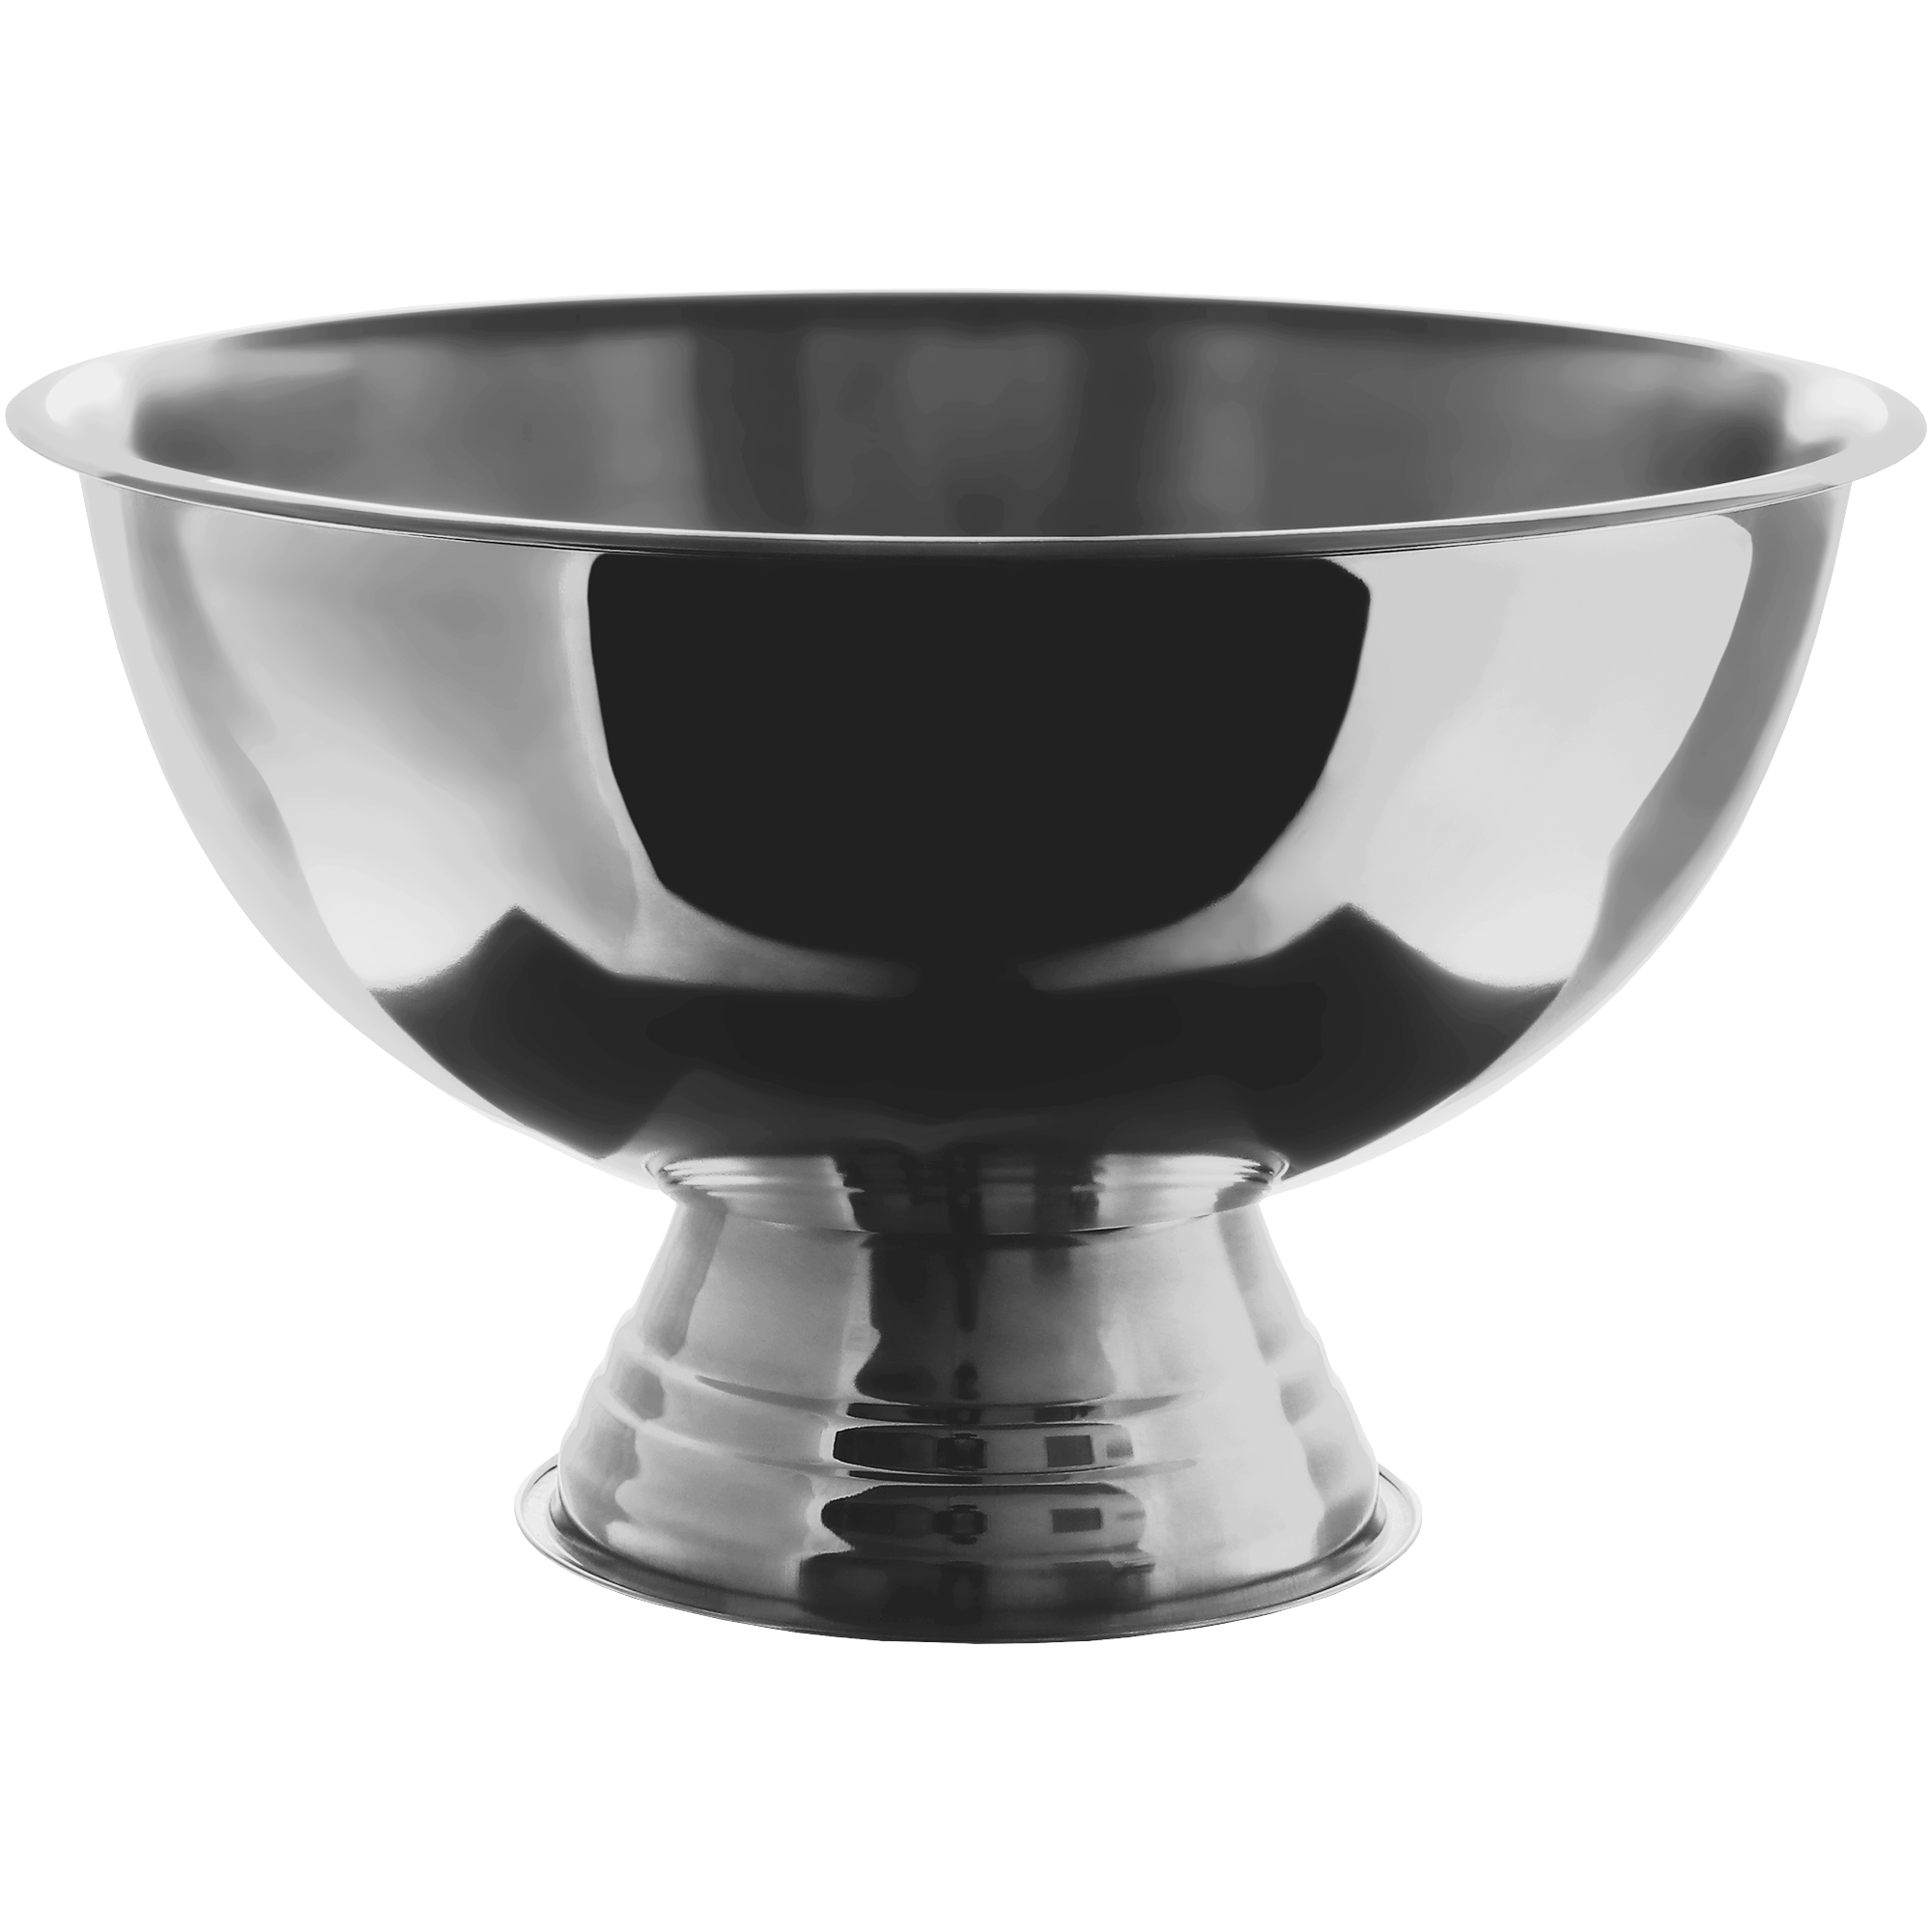 Миска для льда Koopman tableware 39x24 см, цвет черный